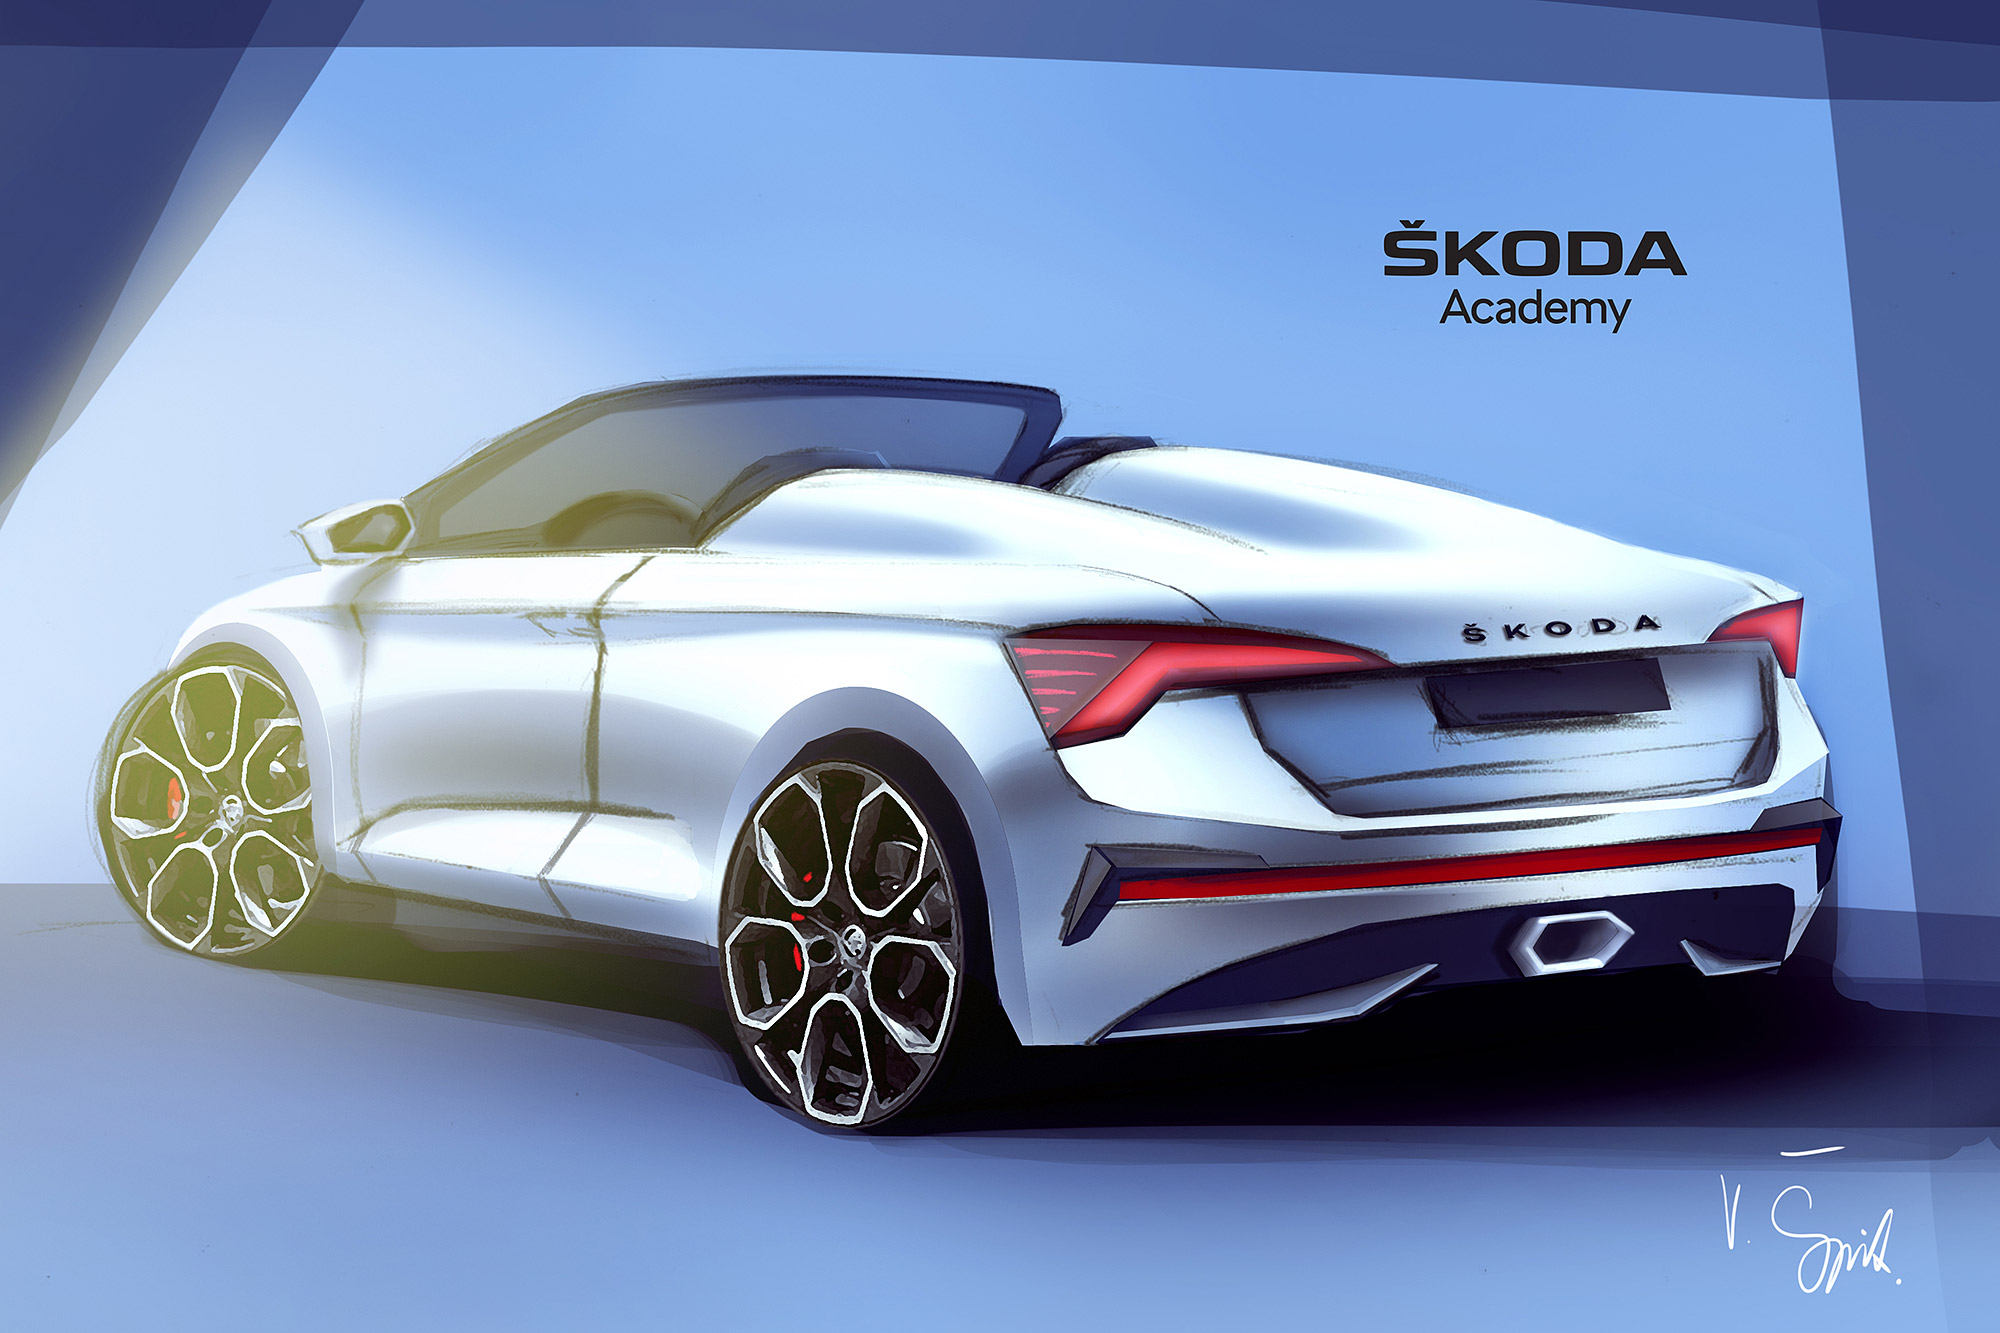 Scala 的年輕造型獲得 Škoda 學生團隊青睞，並延伸改造成為敞篷車。